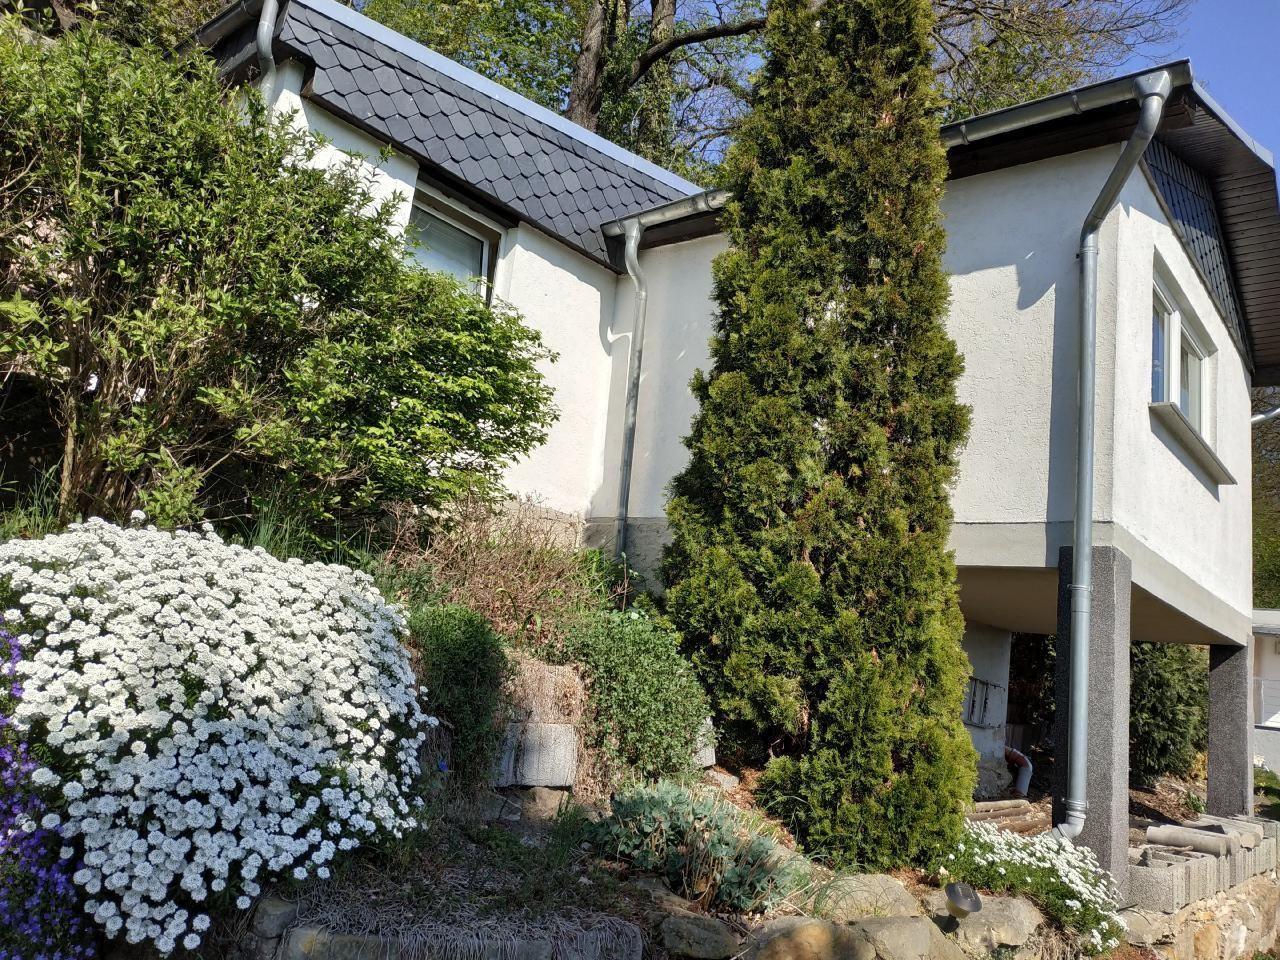 Ferienhaus in Pirna mit Schöner Terrasse  in der Sächsische Schweiz